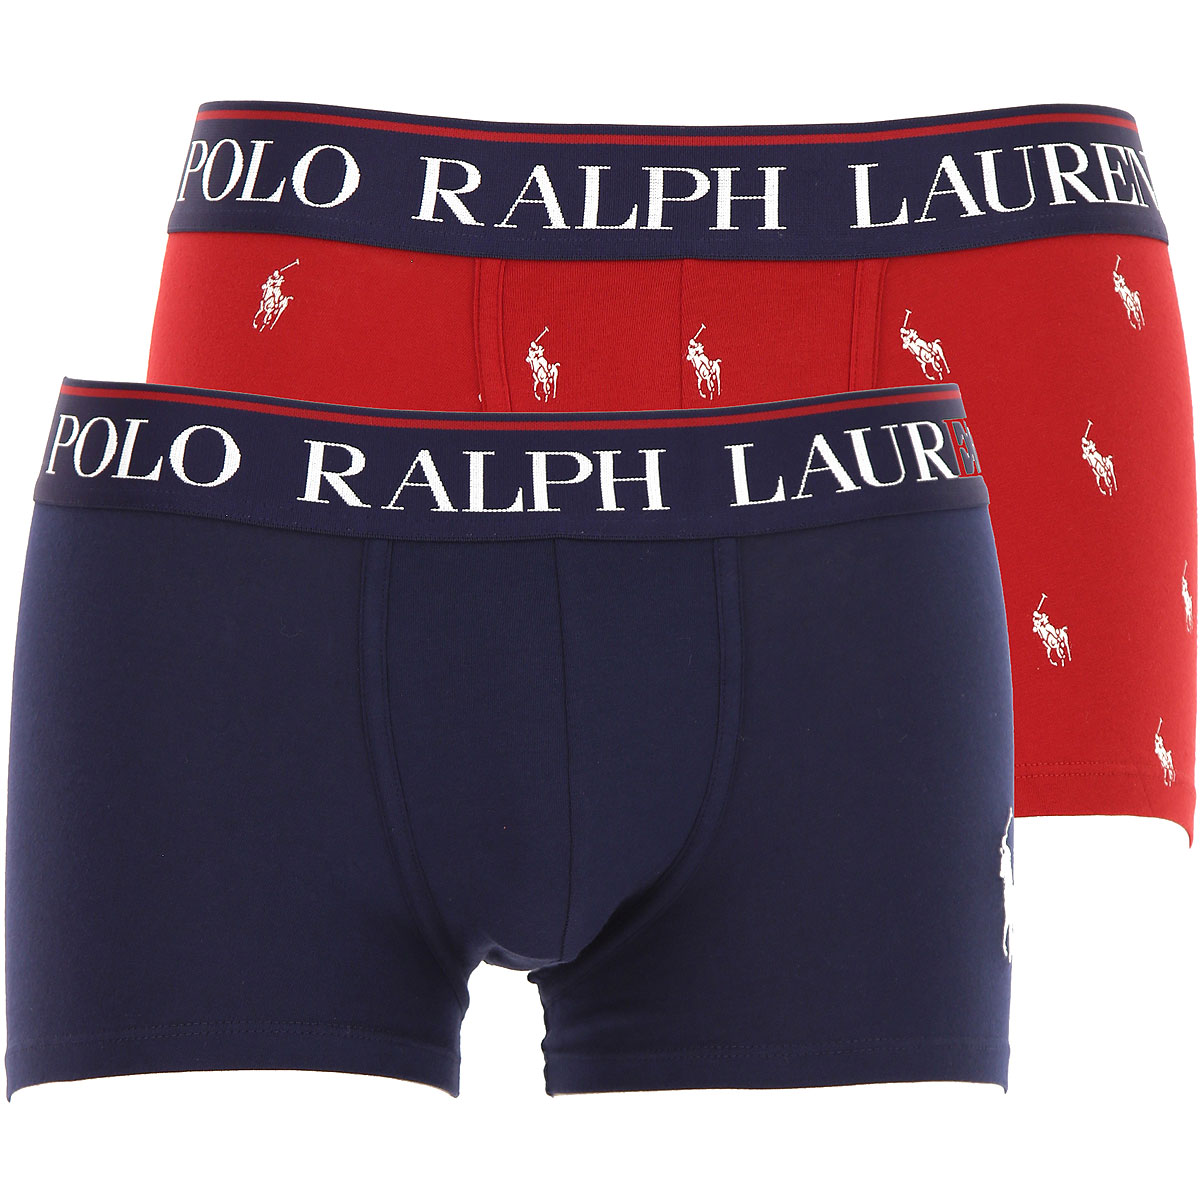 Ralph Lauren Boxer Shorts für Herren, Unterhose, Short, Boxer Günstig im Sale, 2 Pack, Rot, Baumwolle, 2017, L M S XL